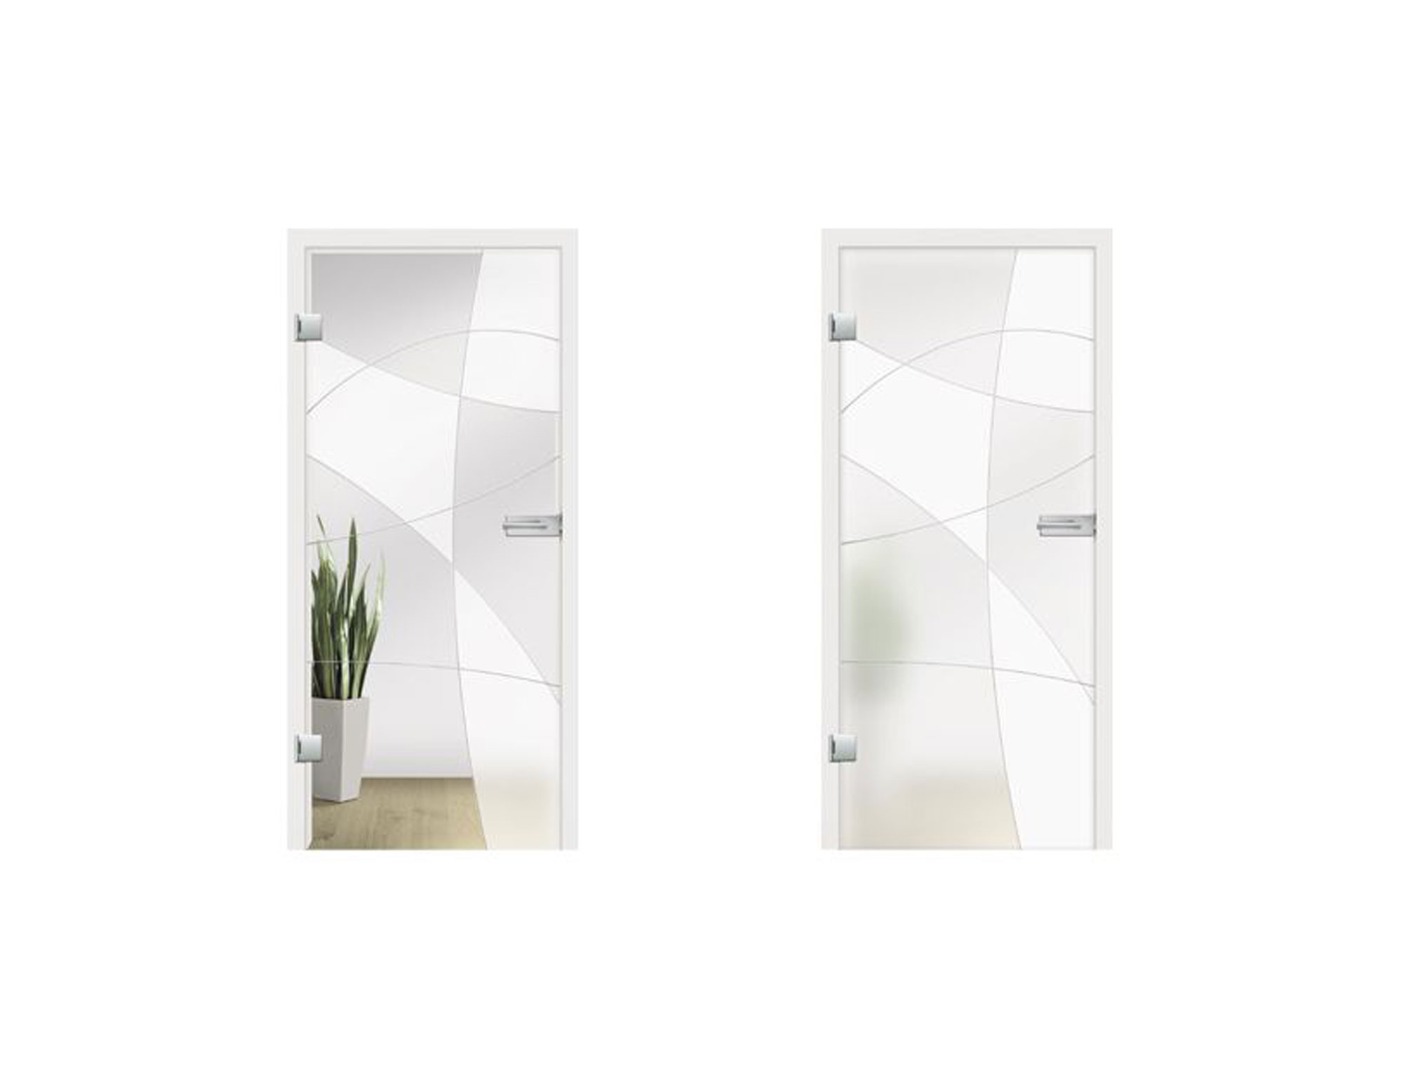 Nubia Grooved Glass Door Design - Internal Sliding Glass Doors